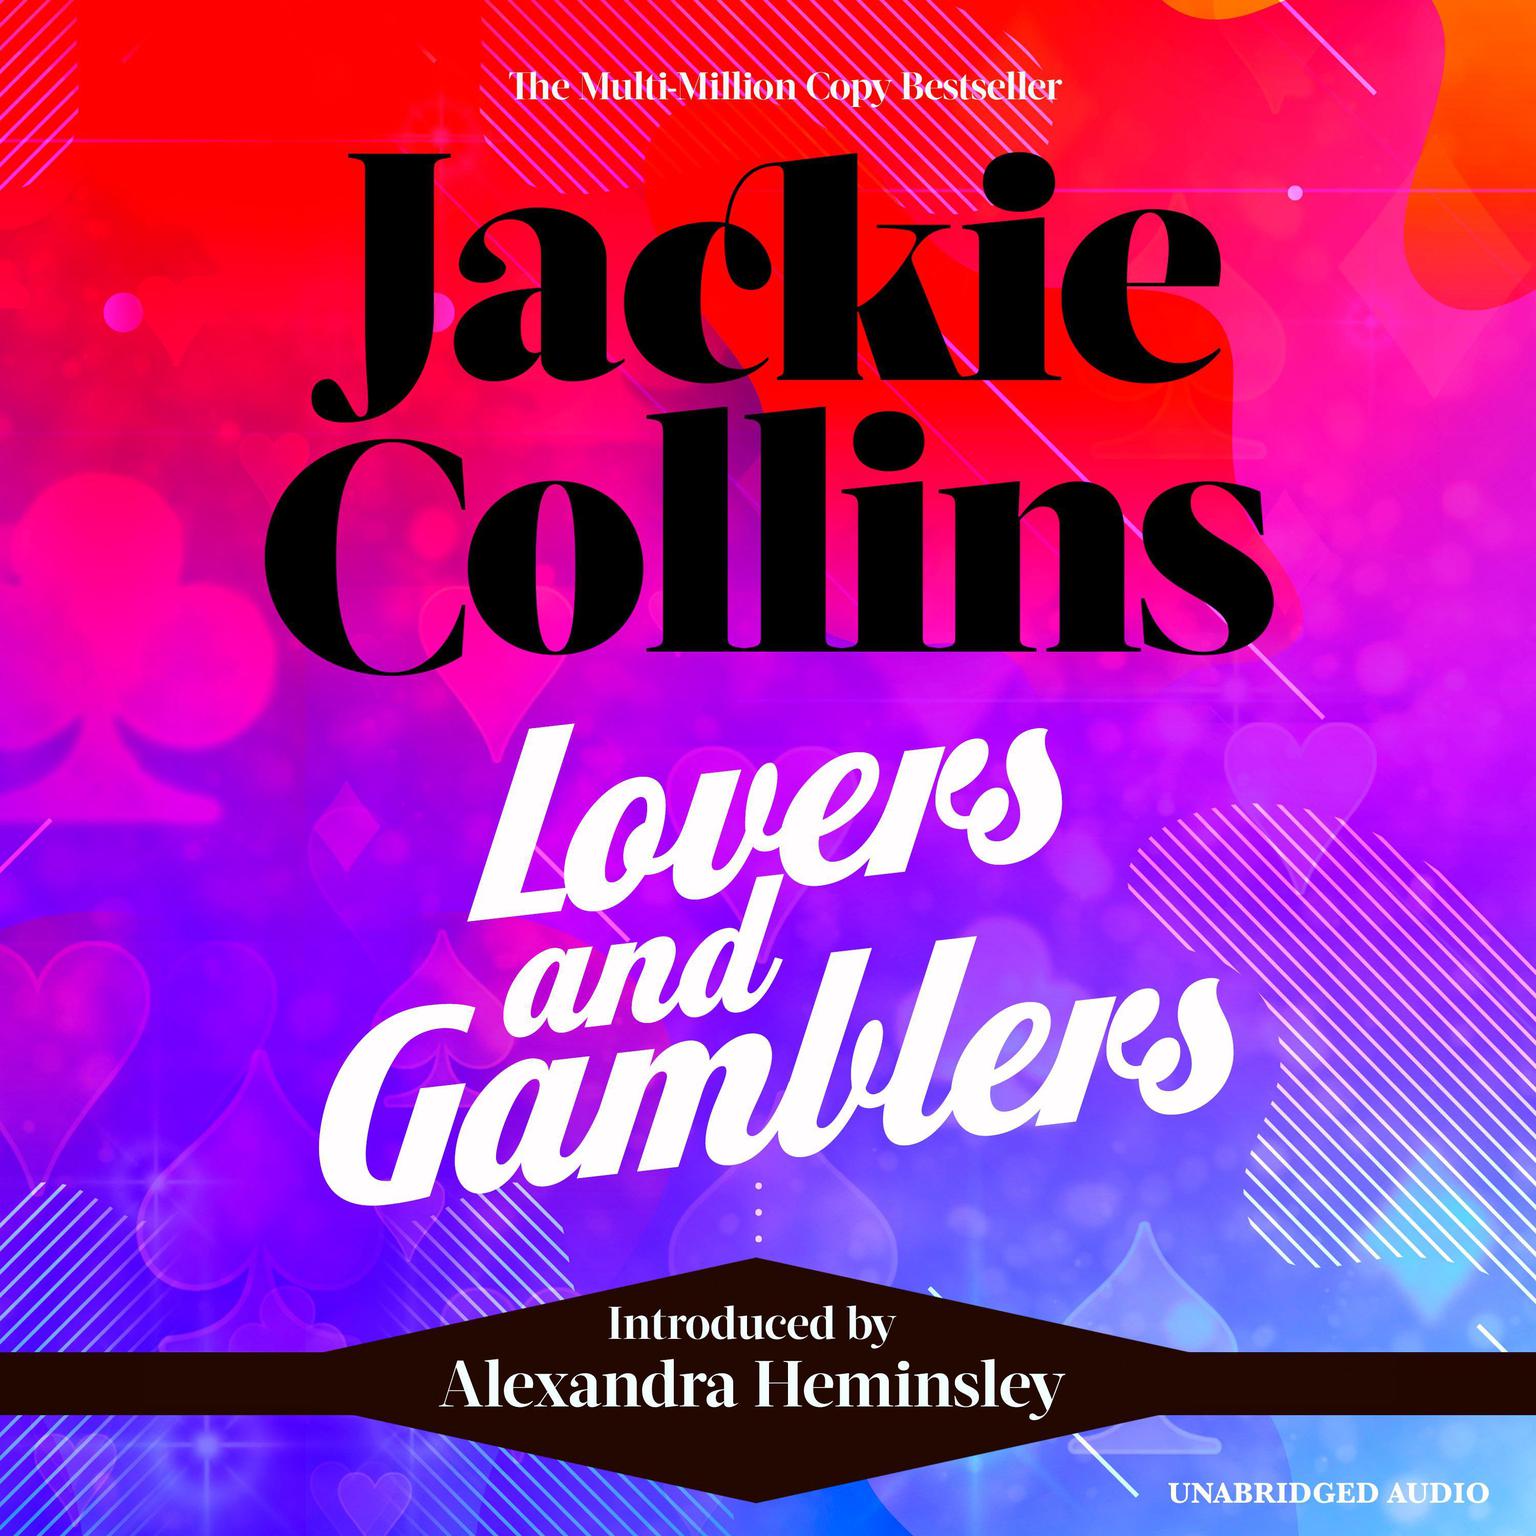 Lovers & Gamblers Audiobook, by Jackie Collins